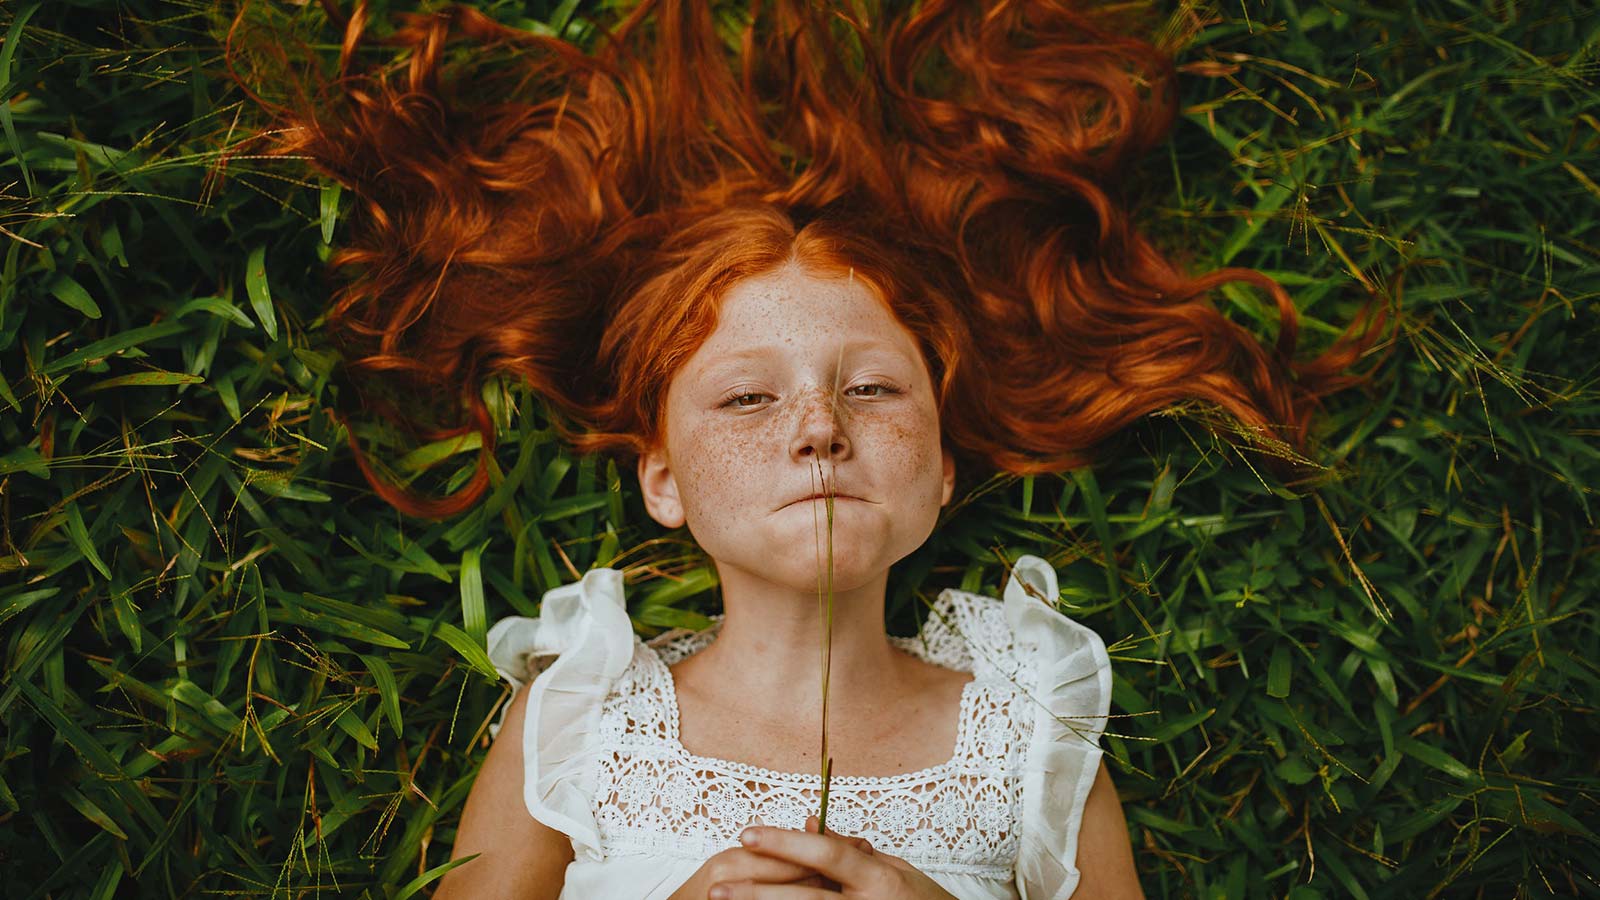 Rødhåret pige ligger i græsset